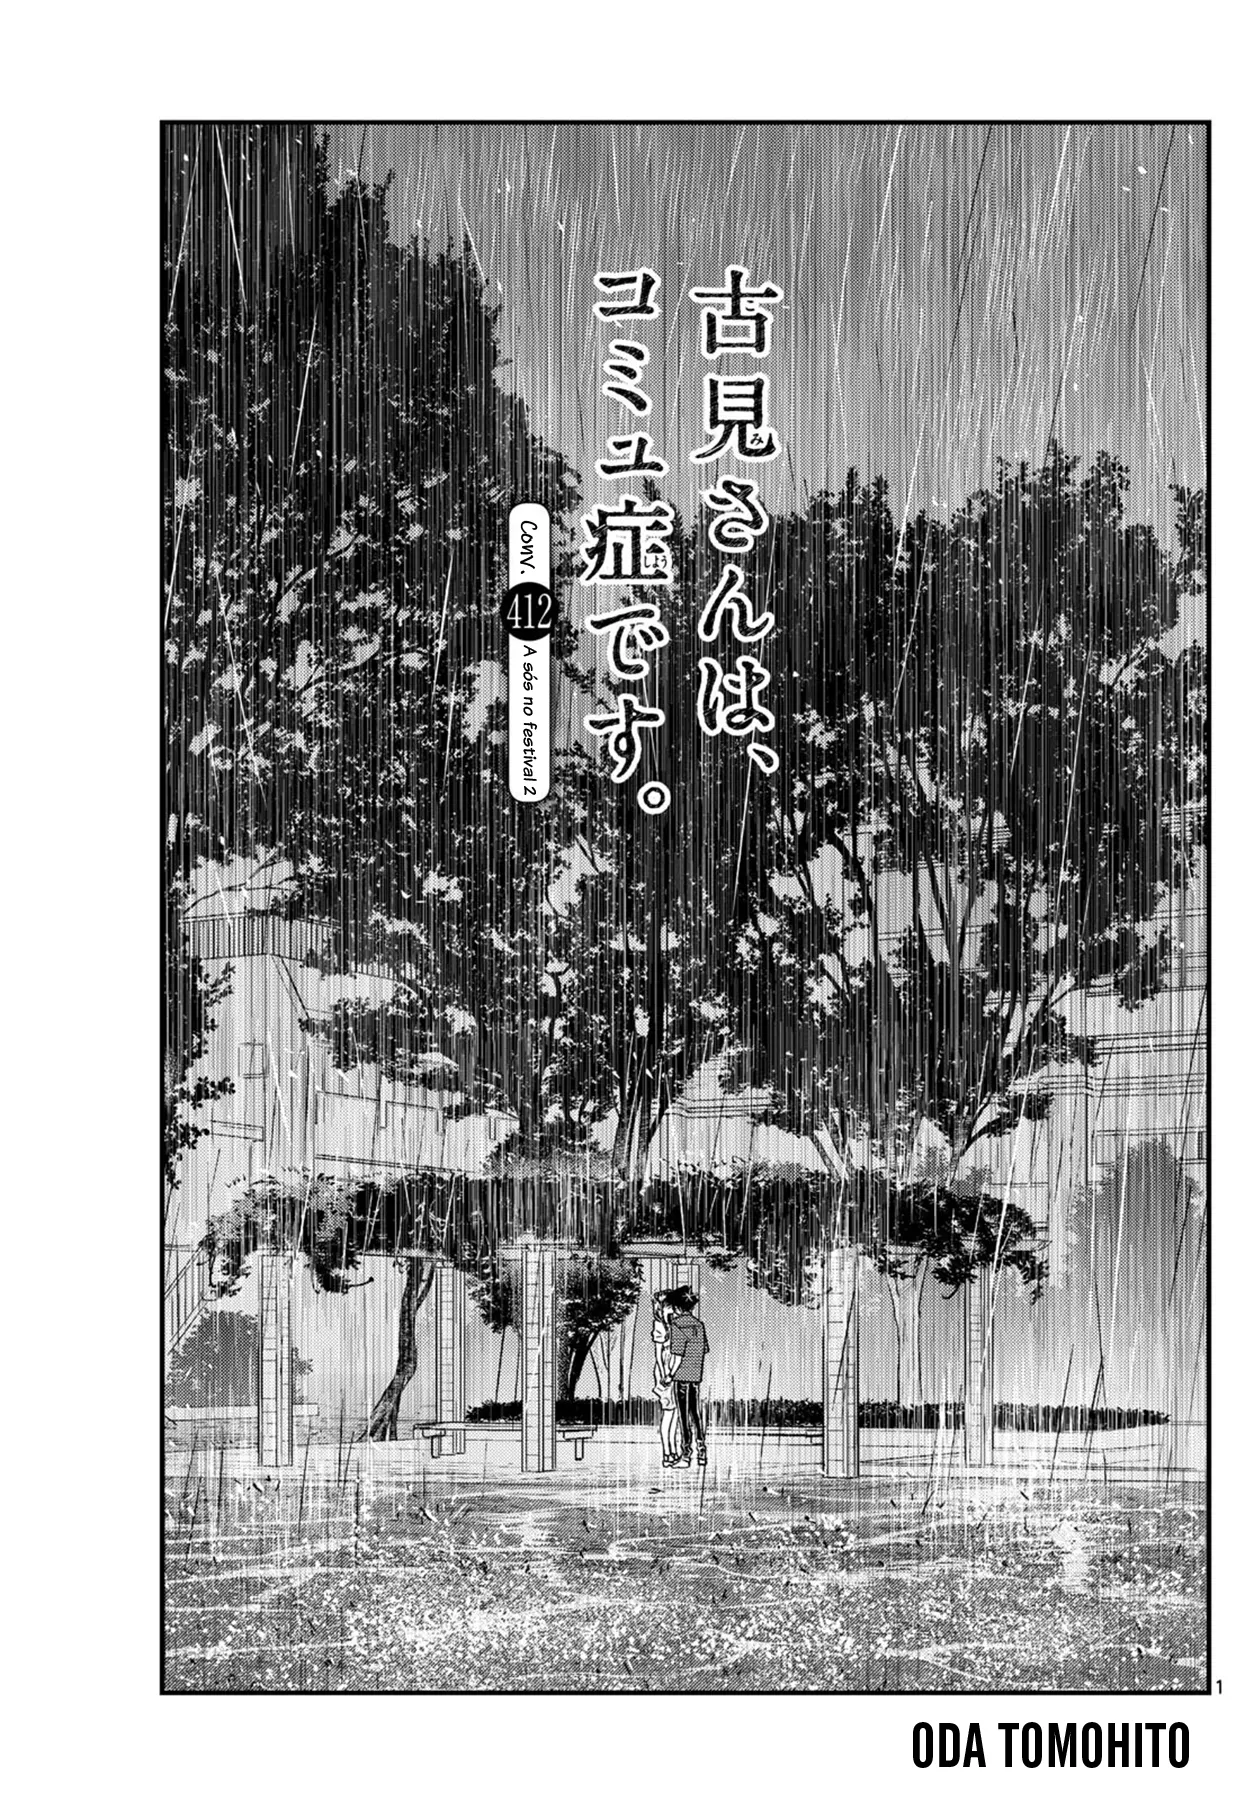 Komi-san wa, Comyushou desu. Capítulo 411 - Manga Online